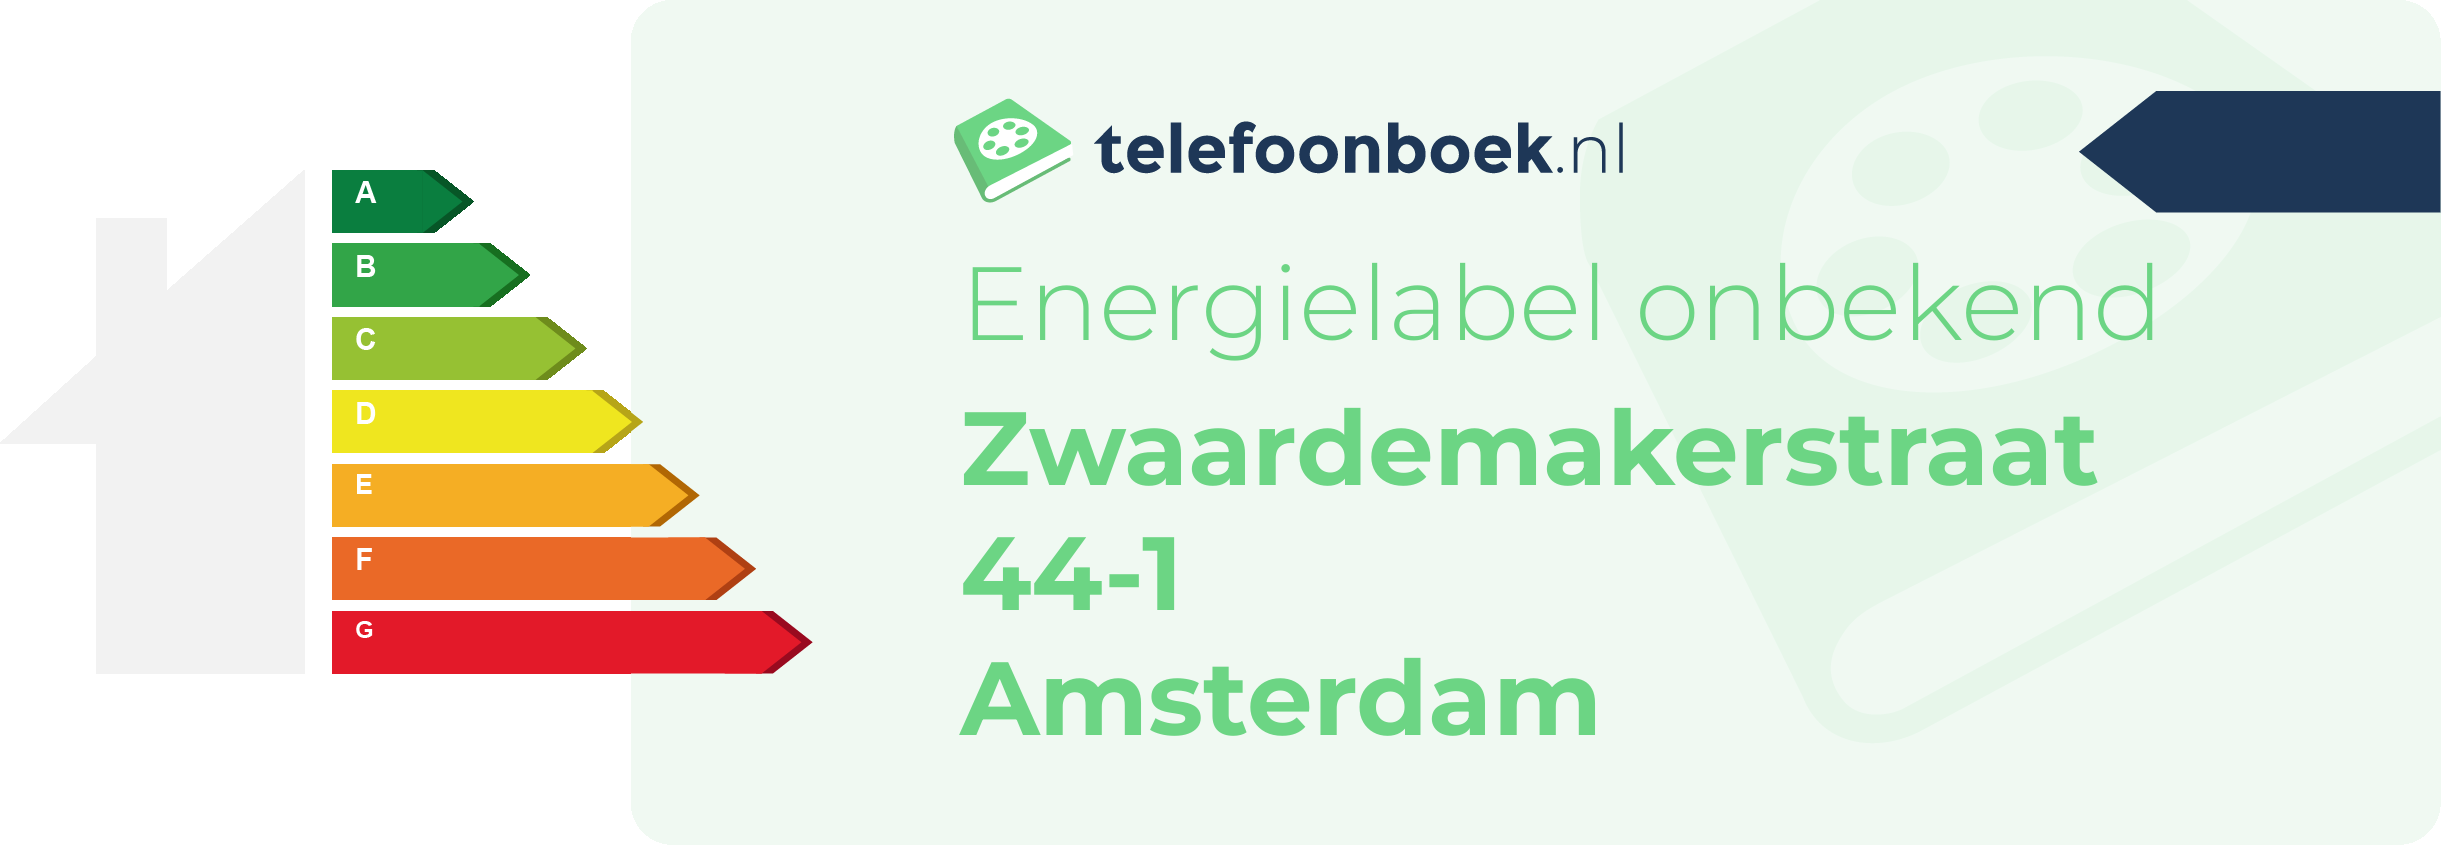 Energielabel Zwaardemakerstraat 44-1 Amsterdam